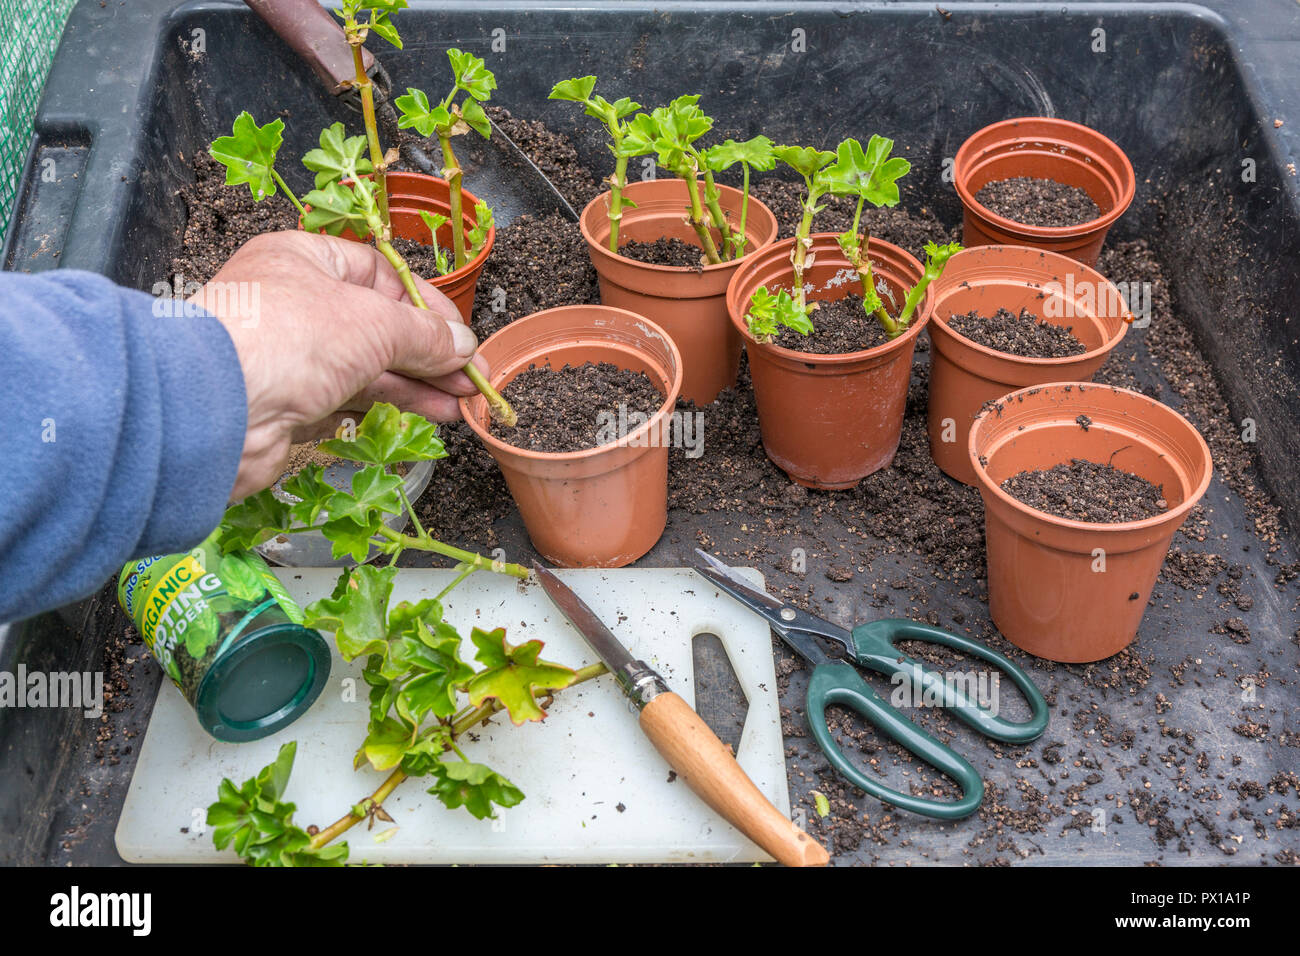 Planting geranium / pelargonium cuttings. Stock Photo